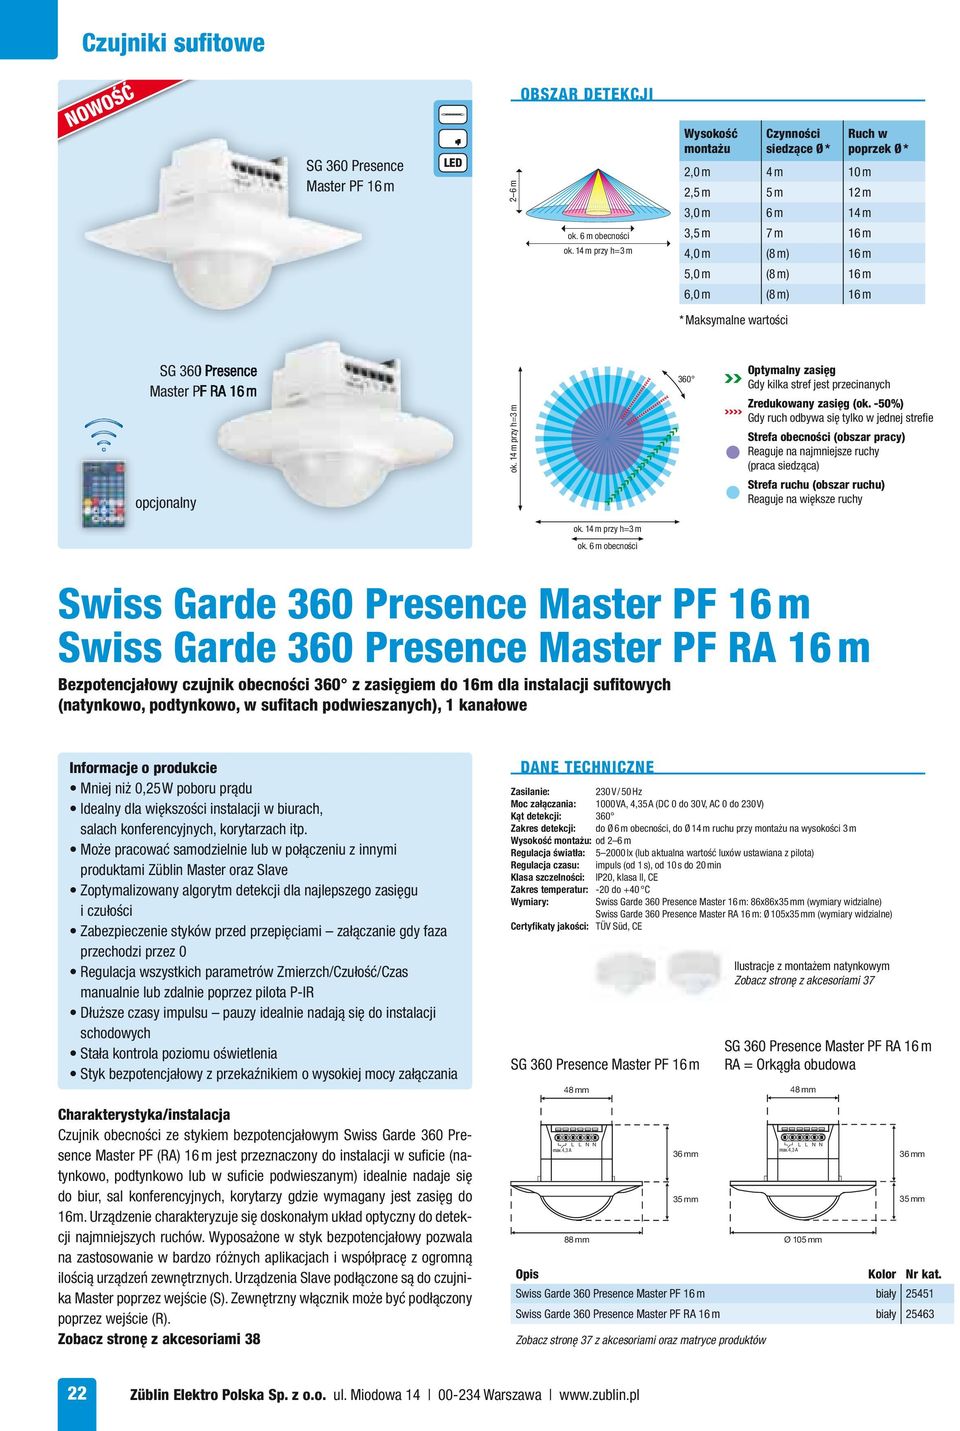 SG 360 Presence Master PF RA 16 m opcjonalny 360 Strefa obecności (obszar pracy) Reaguje na najmniejsze ruchy (praca siedząca) ok.